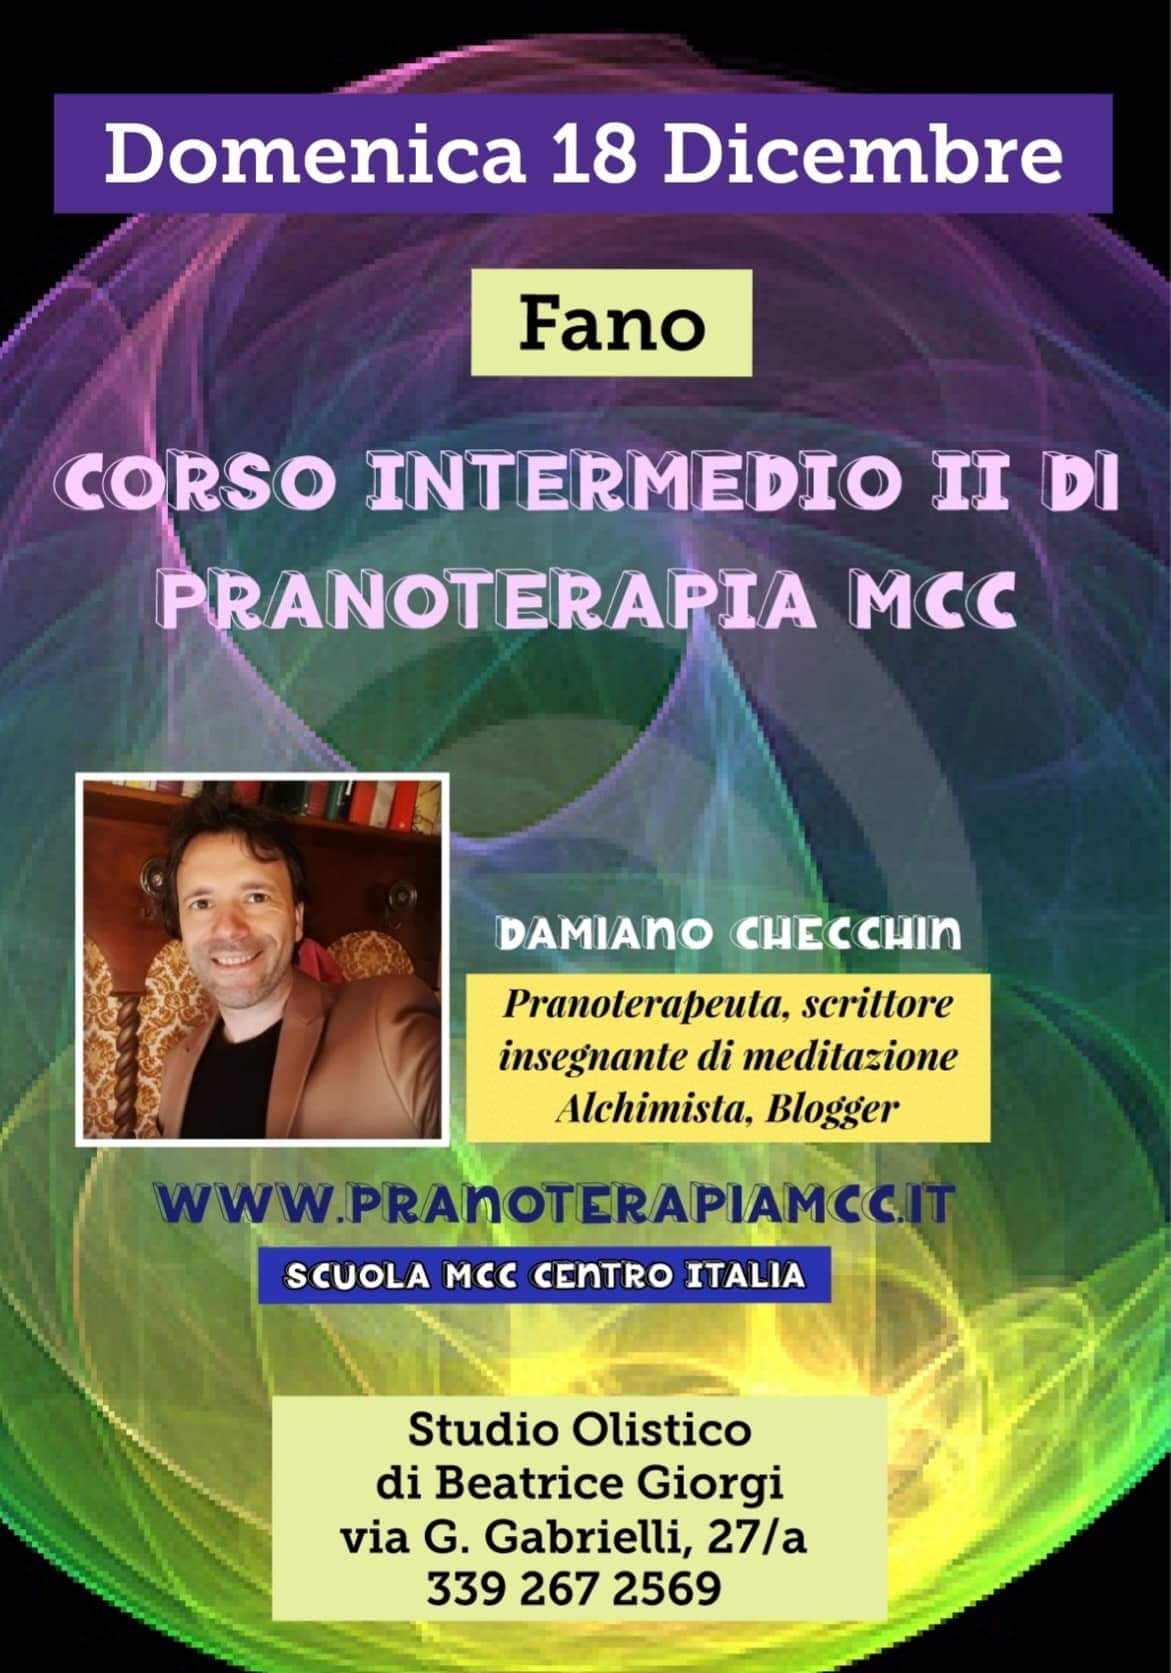 CORSO INTERMEDIO 2 MCC - FANO